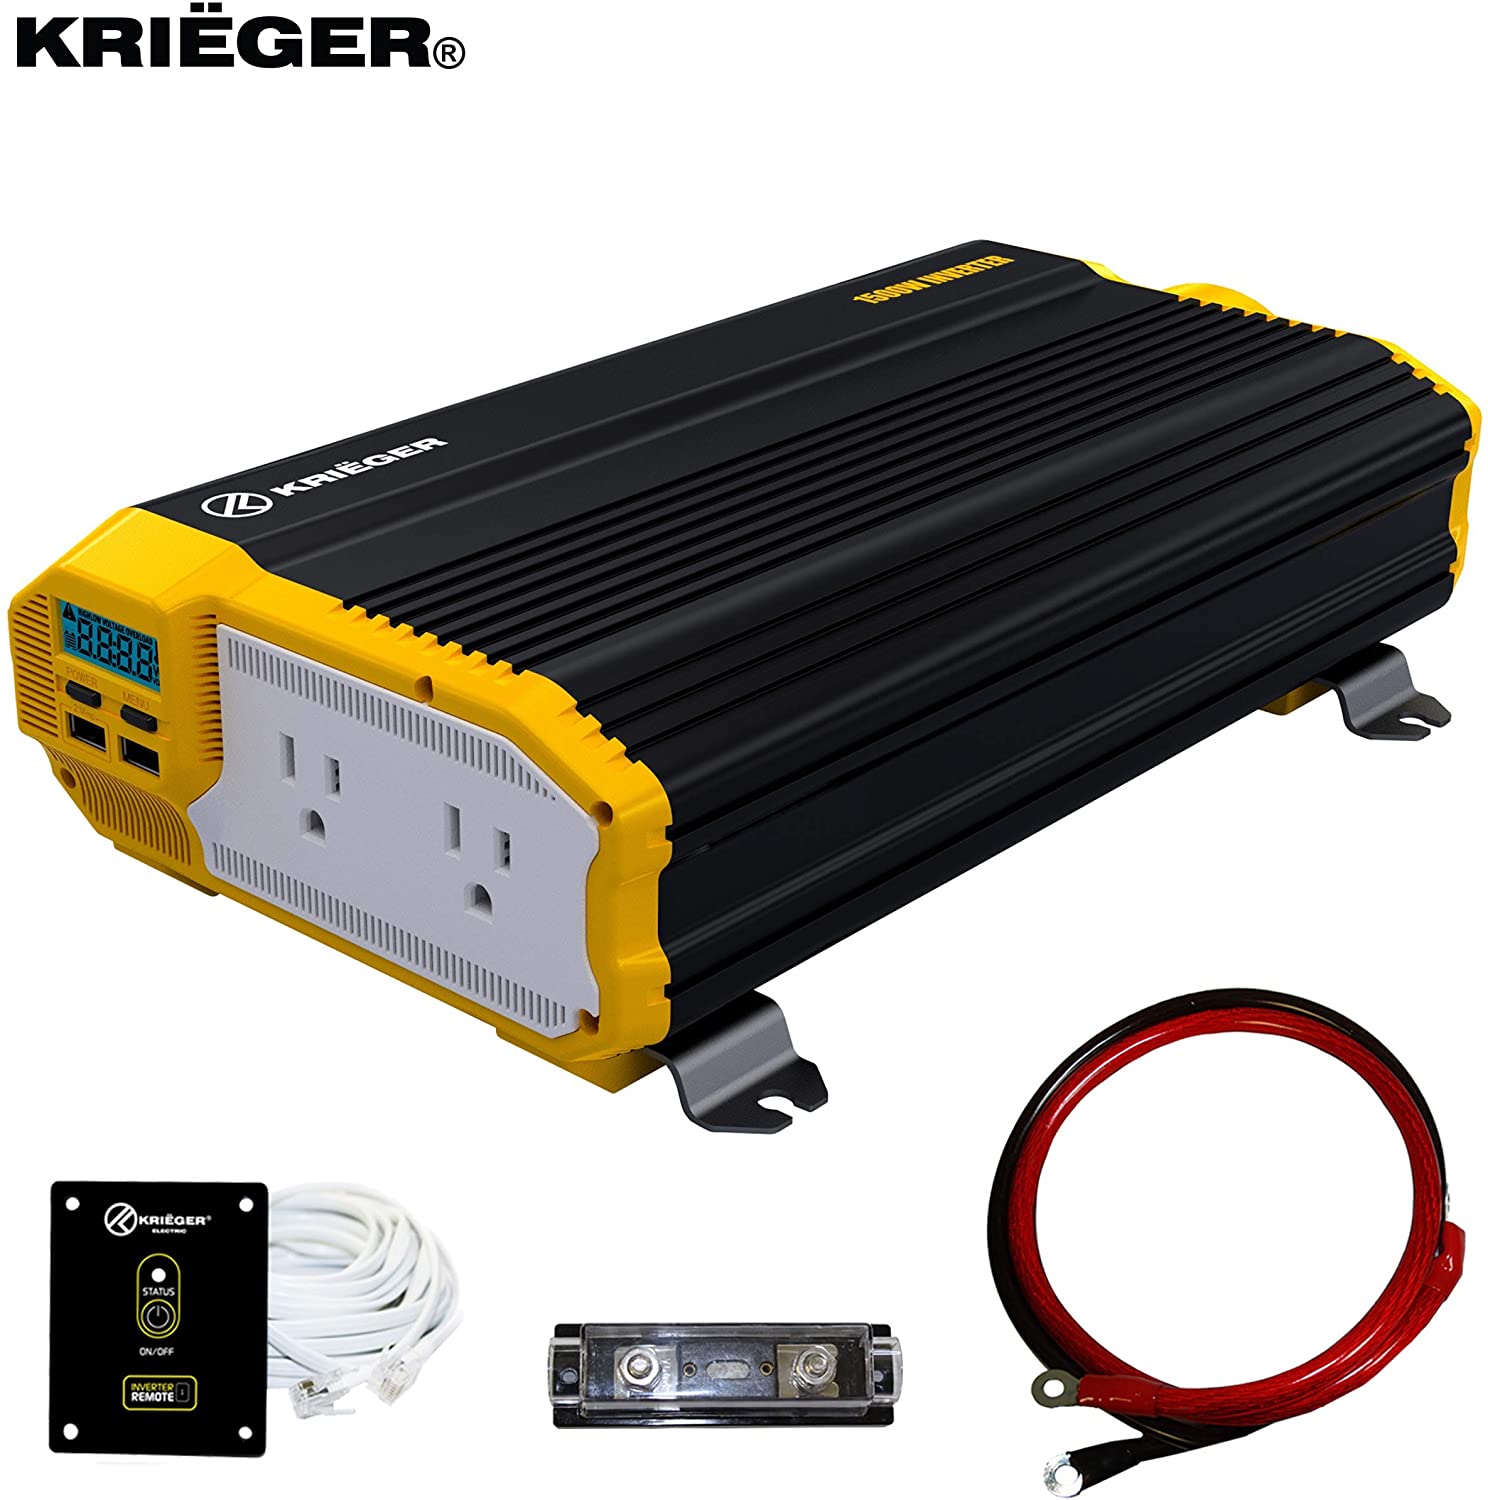 Krieger 1500W Power Inverter